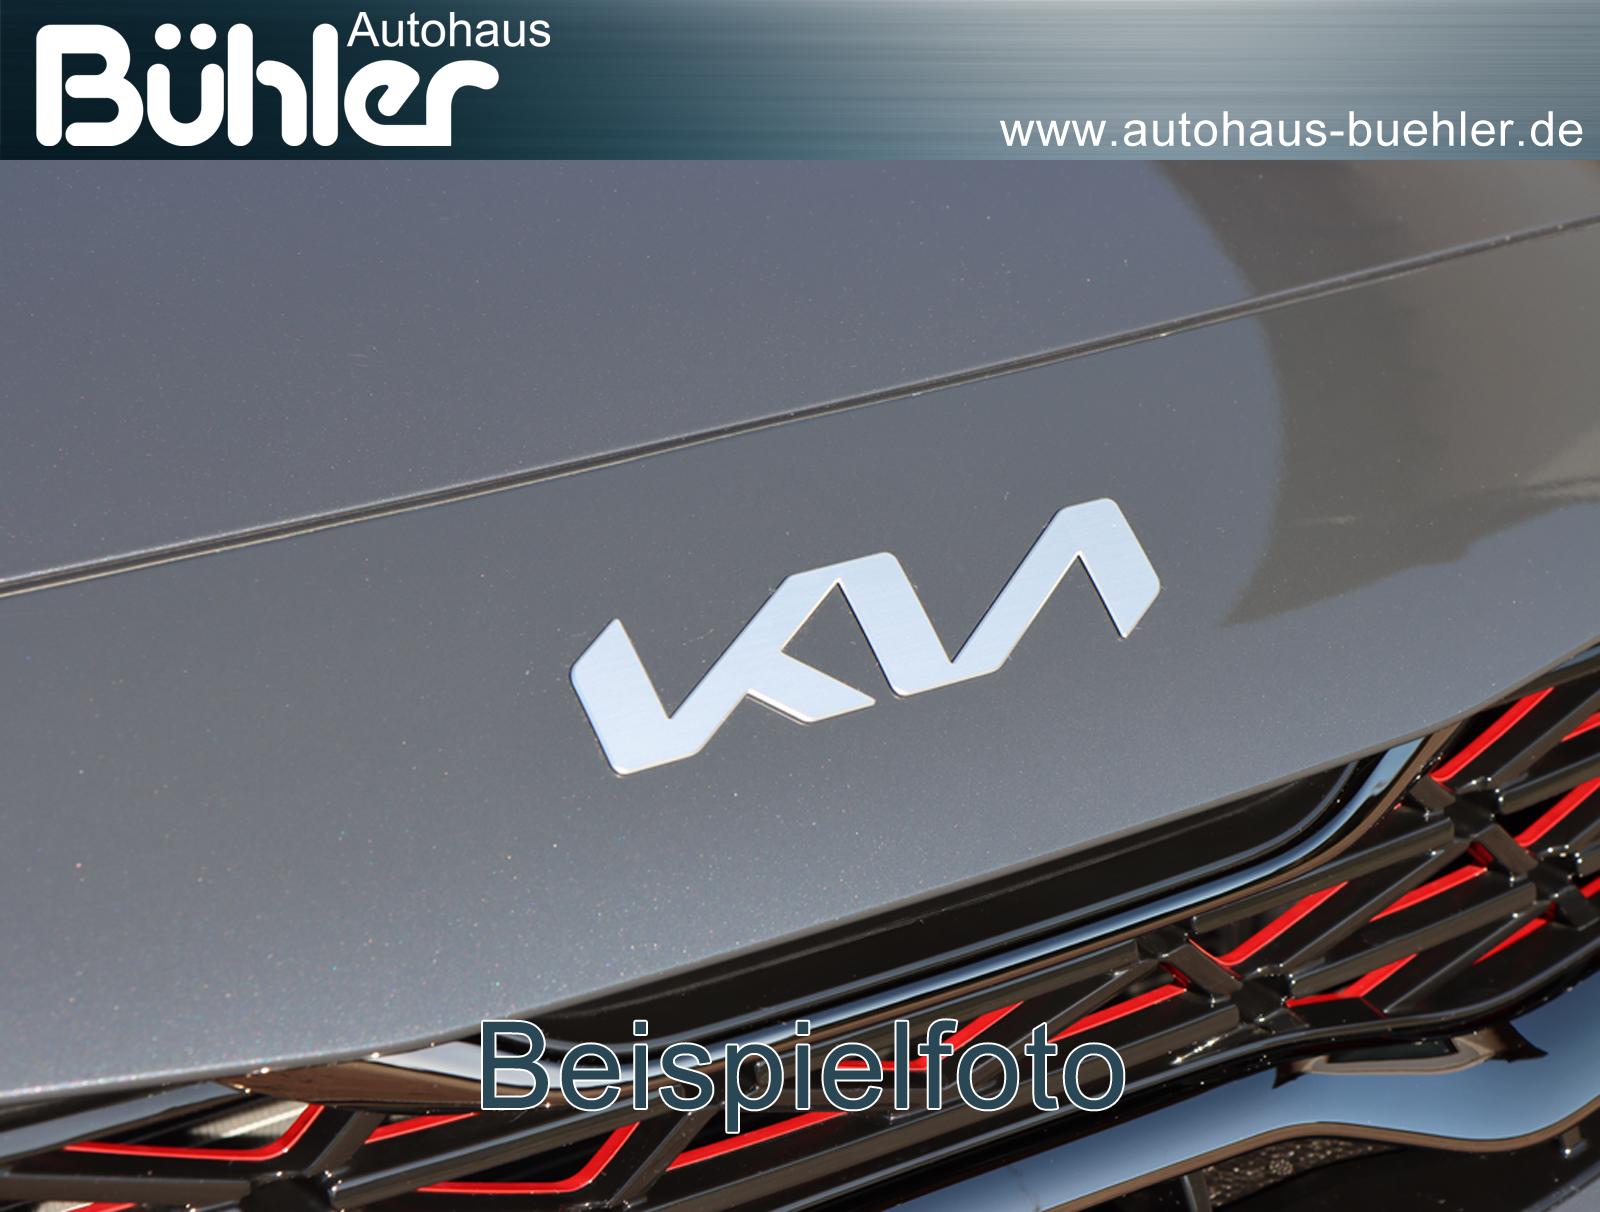 Kia ProCeed 1.6 T-GDI DCT Automatik GT - Pentametall Metallic